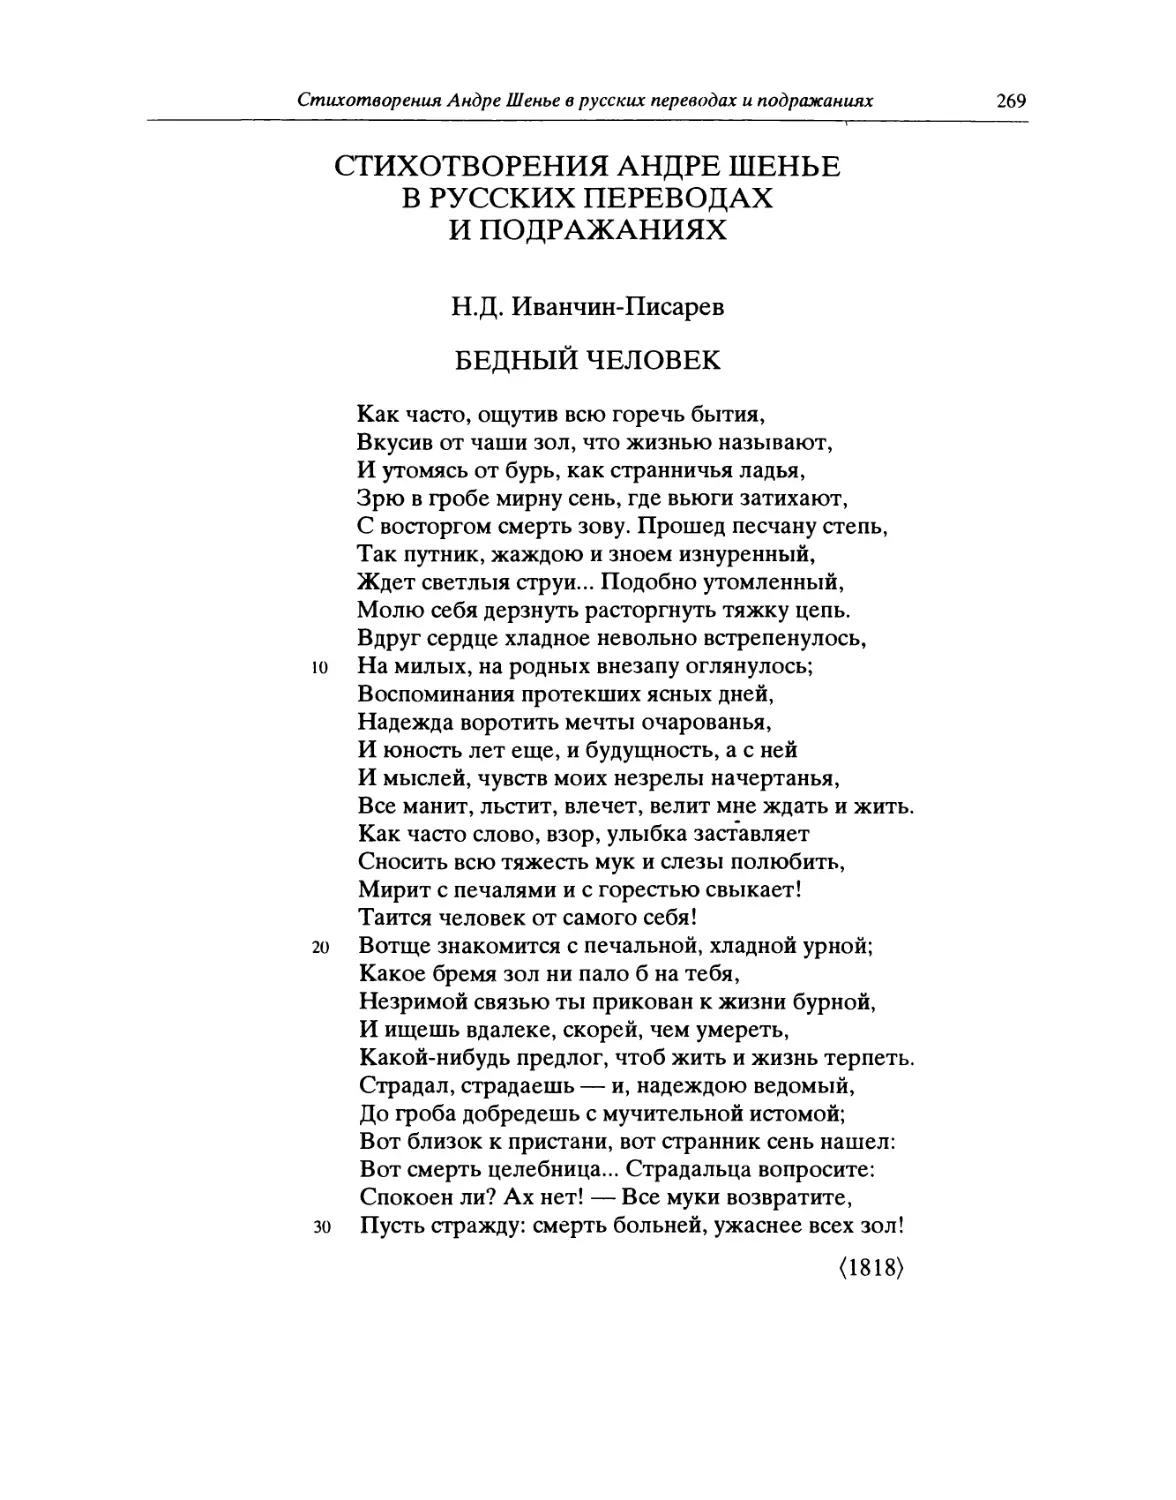 Стихотворения Андре Шенье в русских переводах и подражаниях